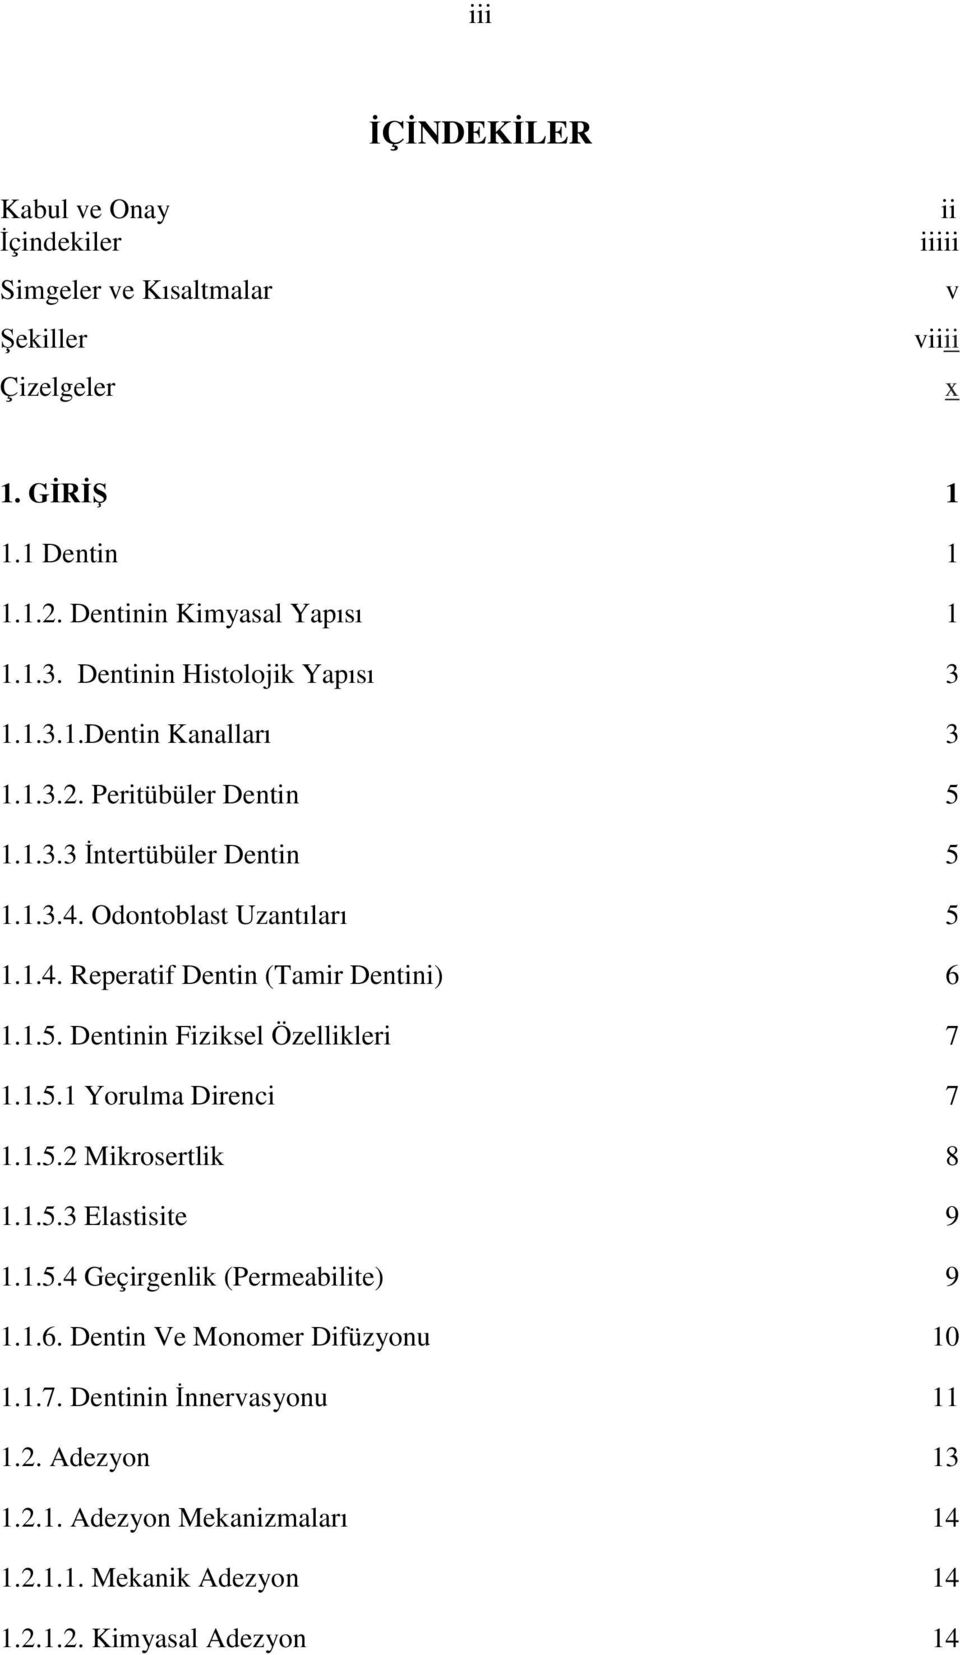 1.5. Dentinin Fiziksel Özellikleri 7 1.1.5.1 Yorulma Direnci 7 1.1.5.2 Mikrosertlik 8 1.1.5.3 Elastisite 9 1.1.5.4 Geçirgenlik (Permeabilite) 9 1.1.6.